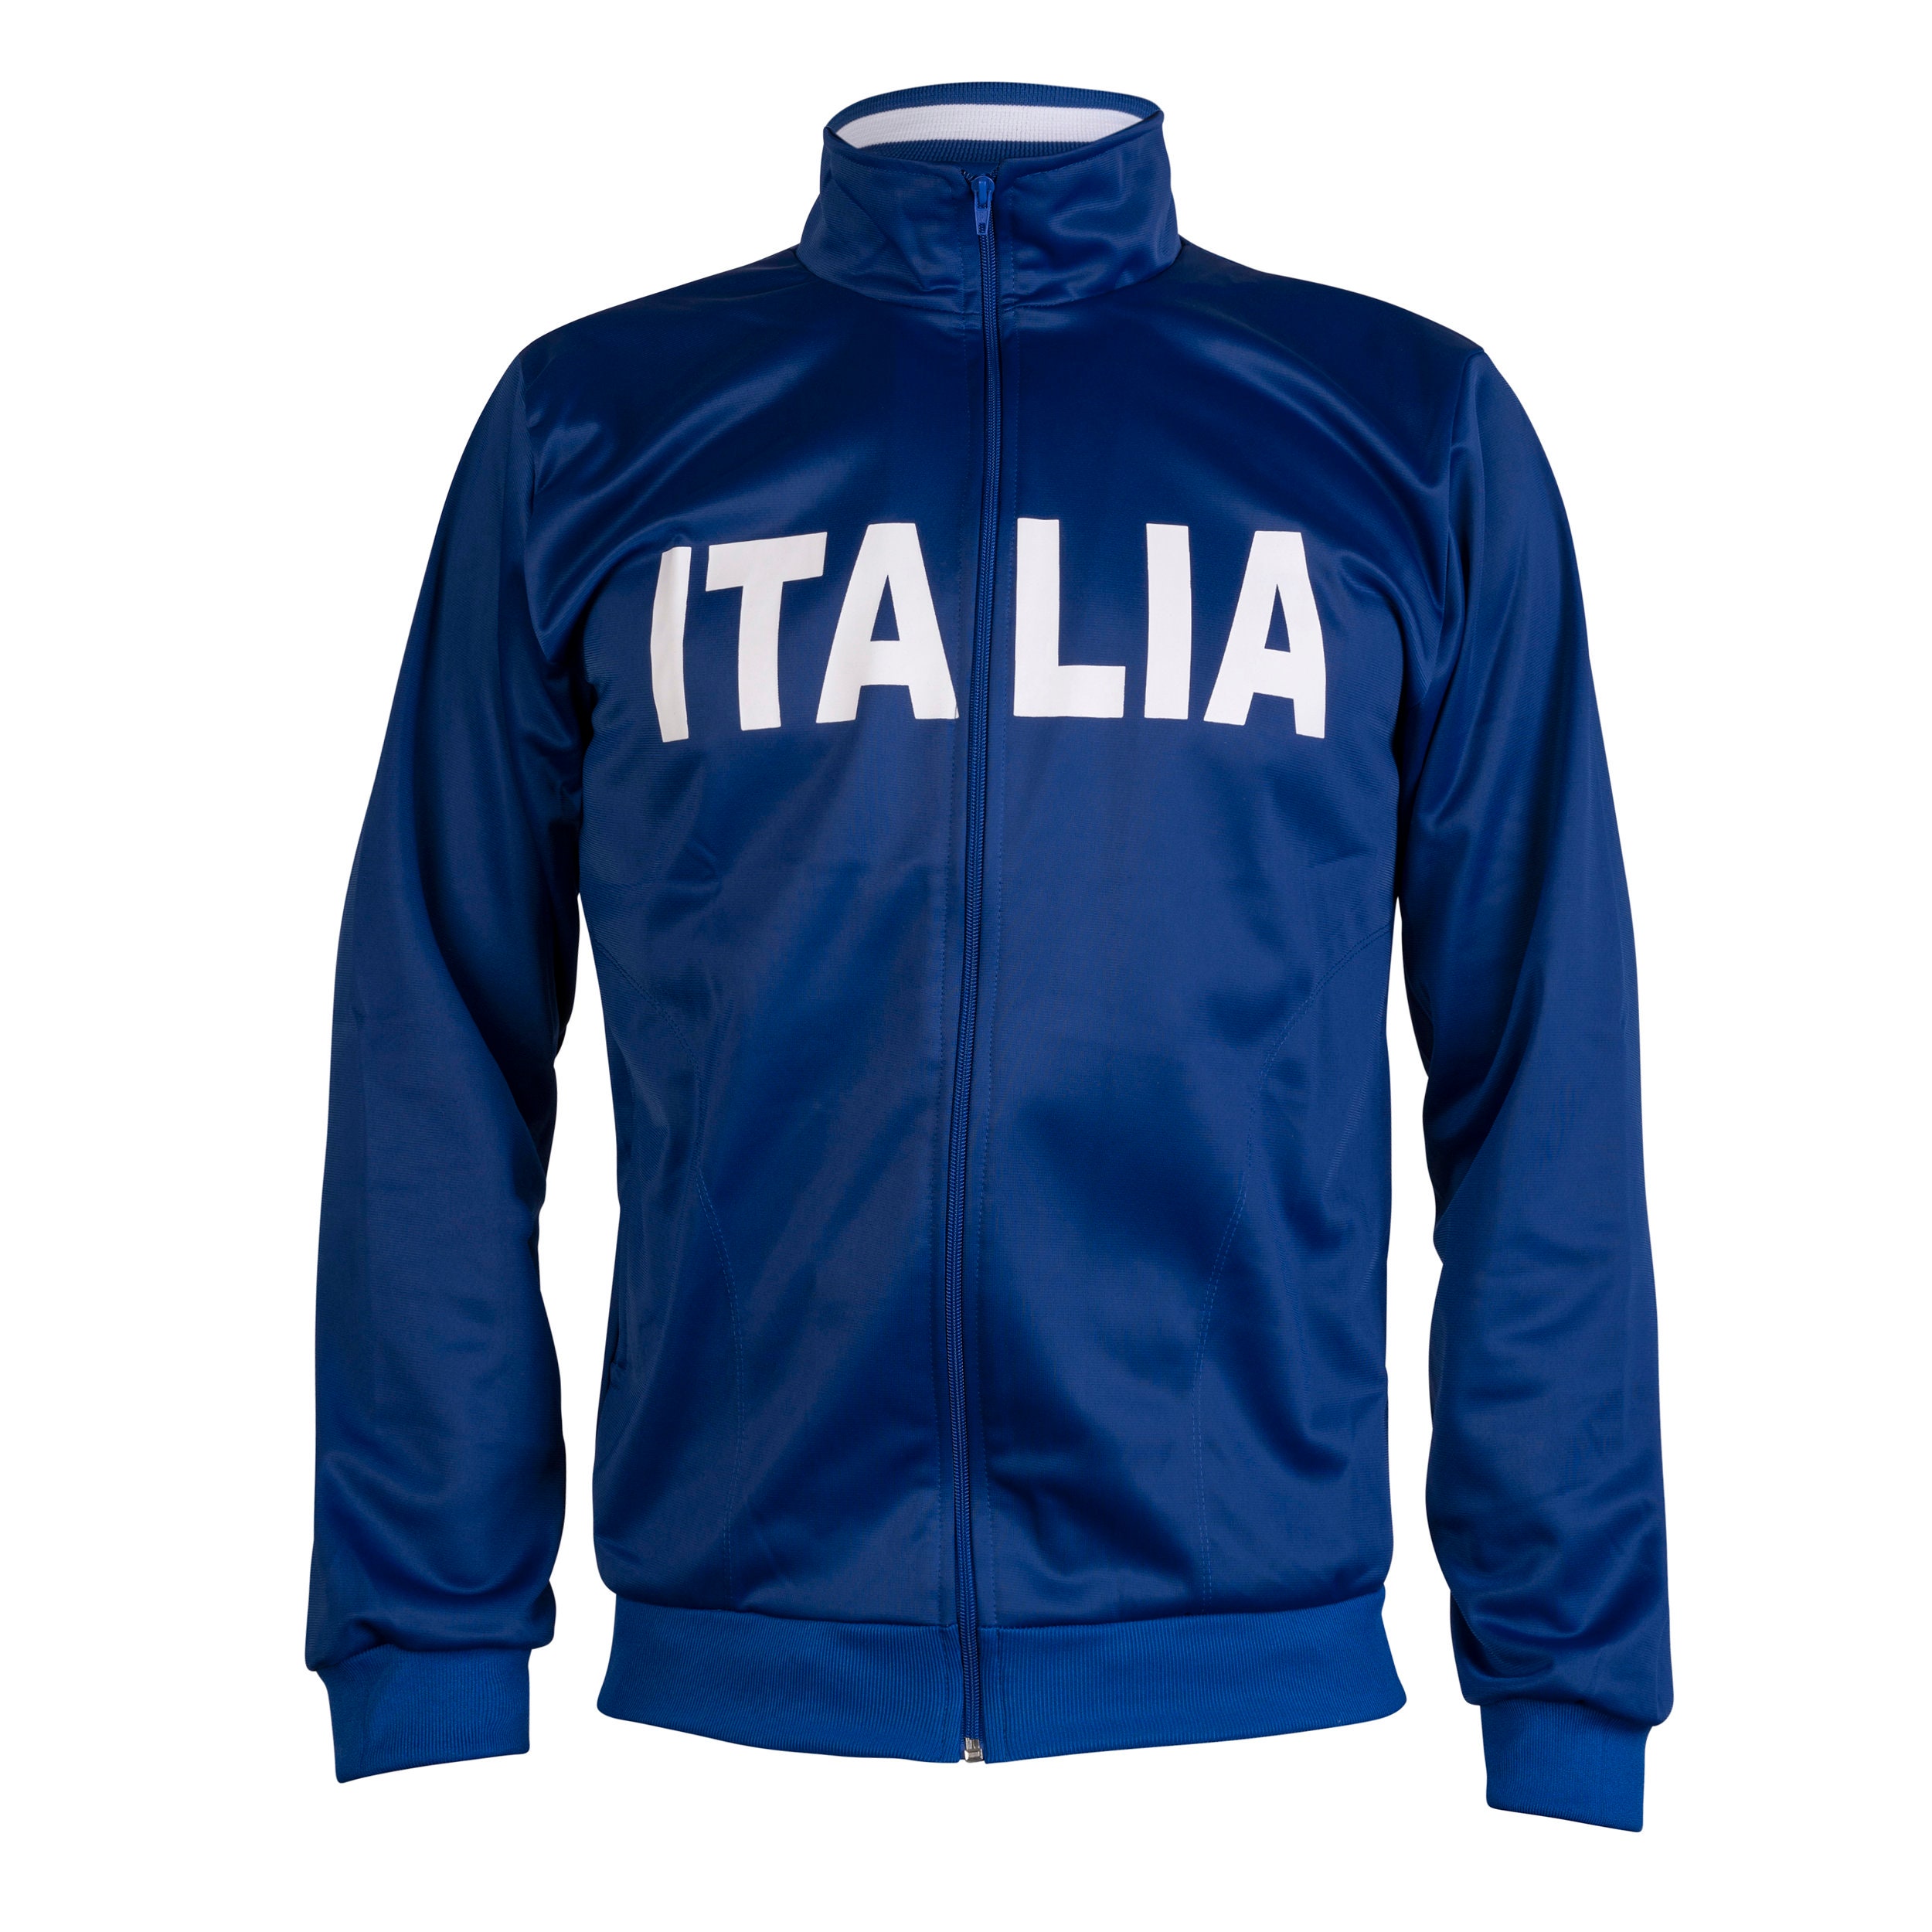 Italia Jacket - Etsy Canada